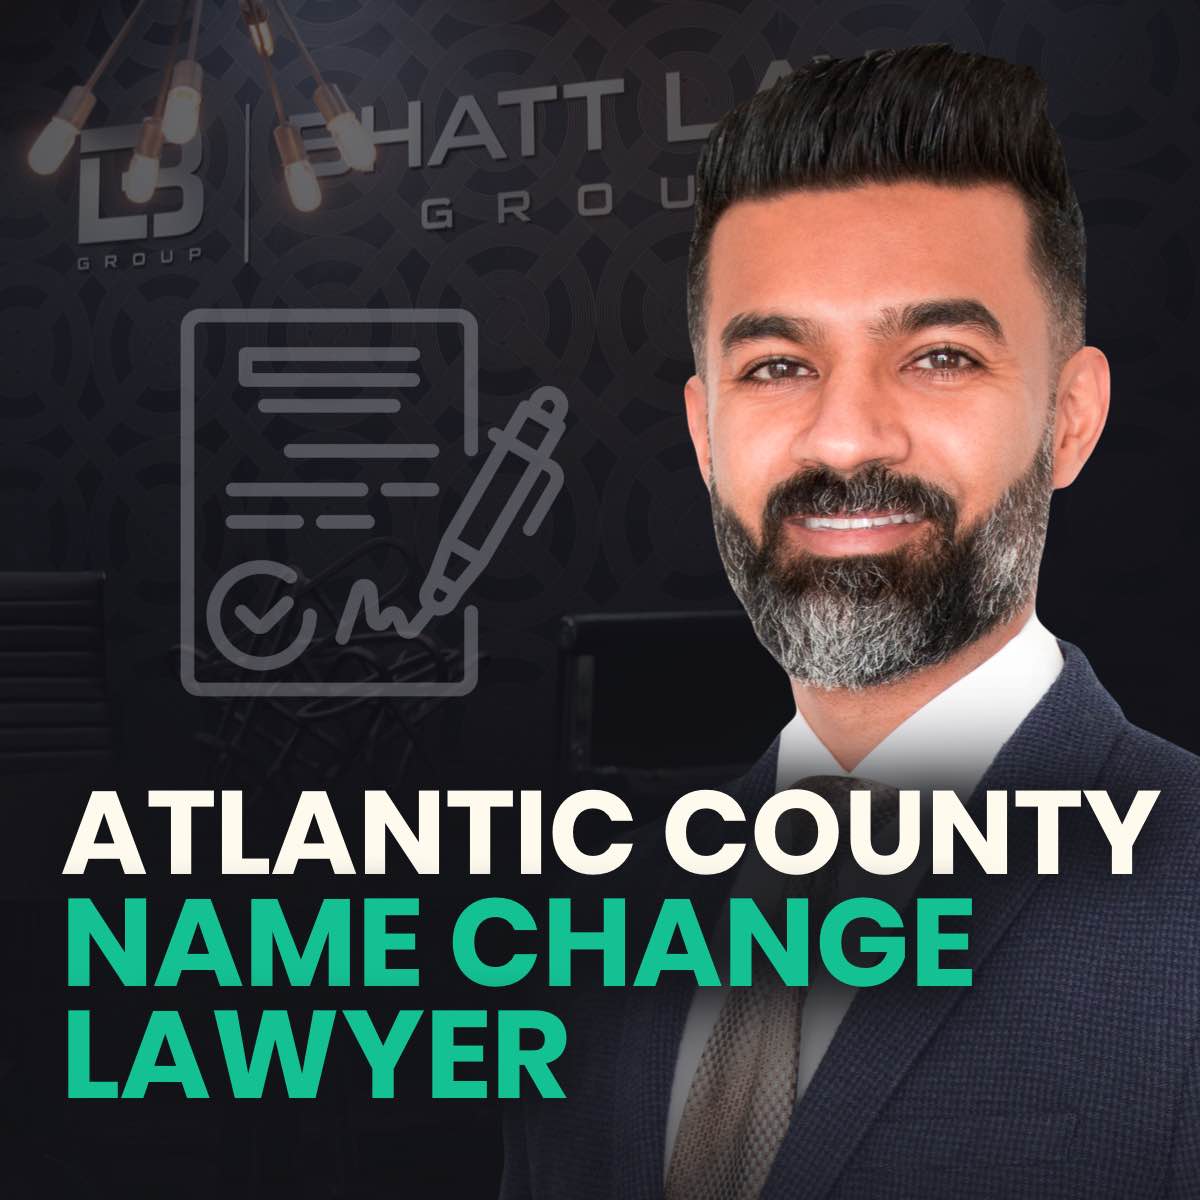 Atlantic County Name Change Lawyer